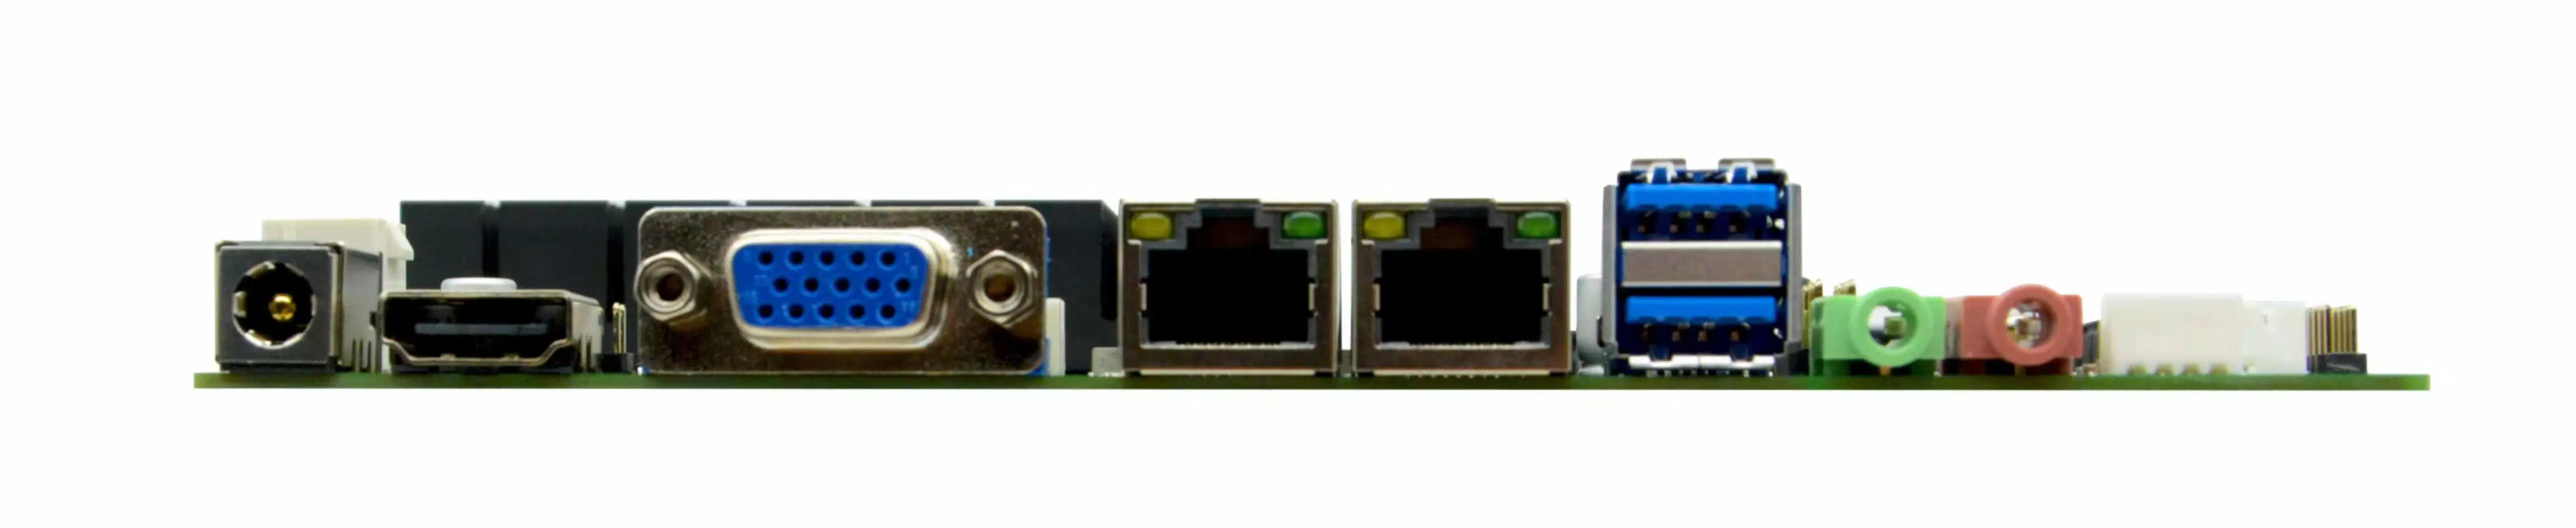 Intel J1900 Fanless 2 RS232 9 USB Mini-Itx Motherboard, Mini Itx Board, Motherboard DC 12V